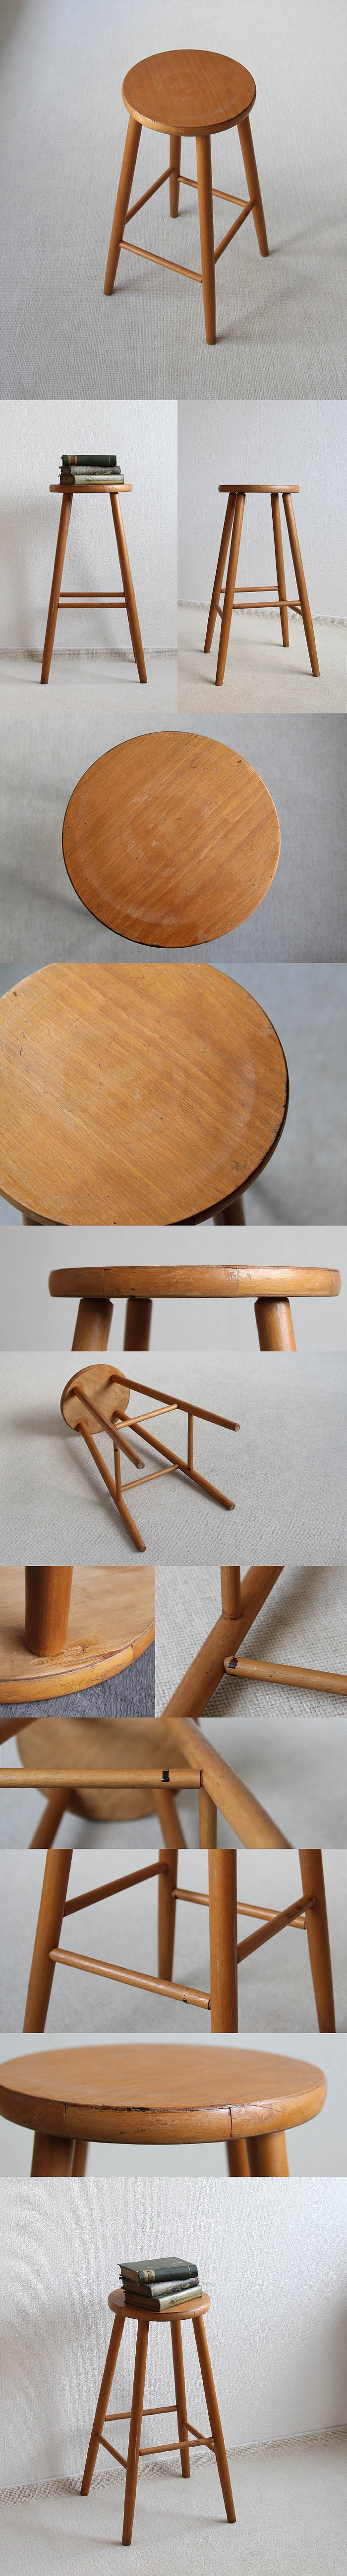 イギリス ヴィンテージ ハイスツール 木製椅子 カントリー 花台 アンティーク 家具 「ナチュラル」V-919